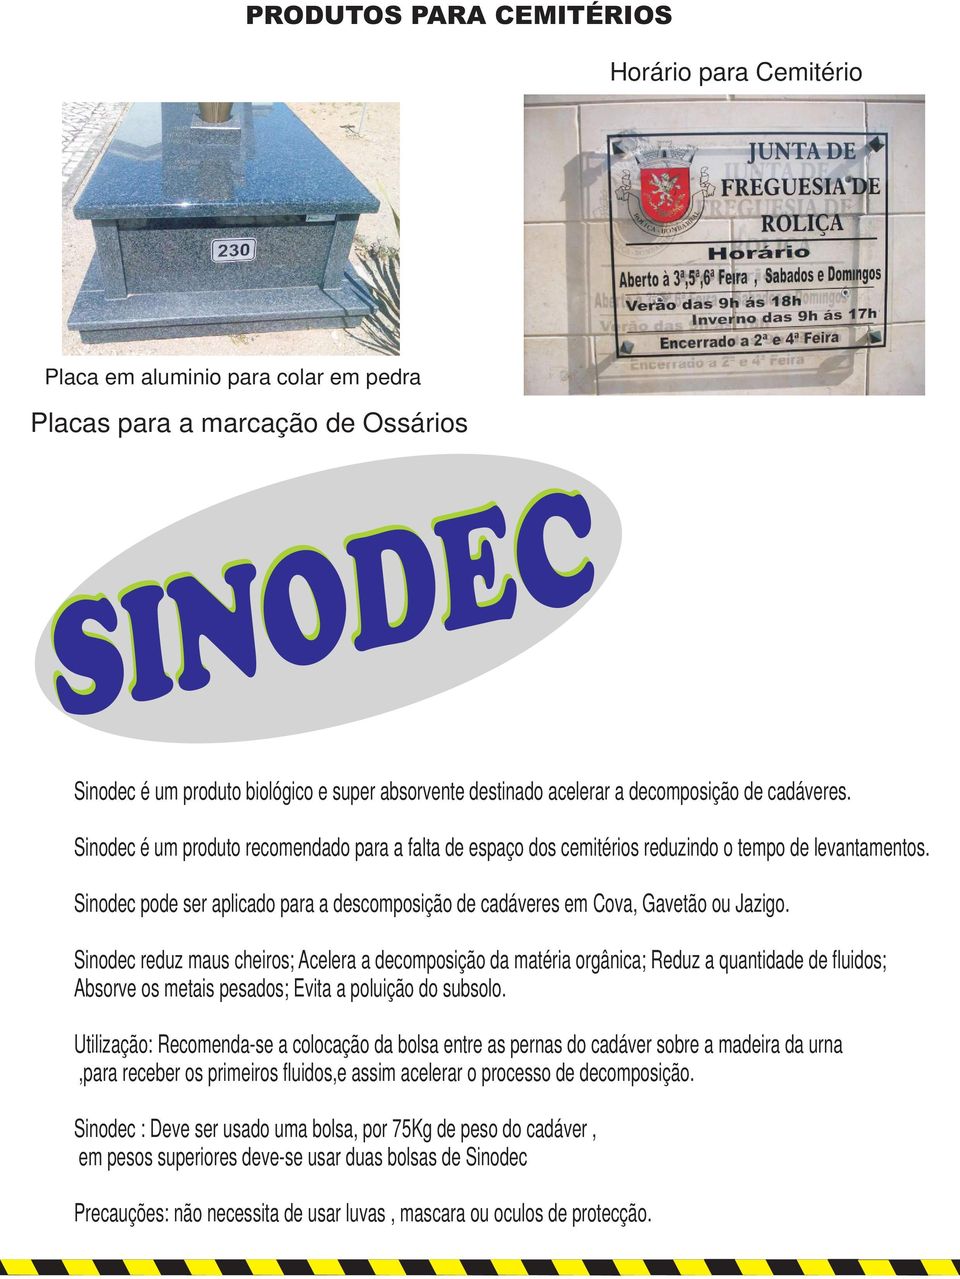 Sinodec pode ser aplicado para a descomposição de cadáveres em Cova, Gavetão ou Jazigo.